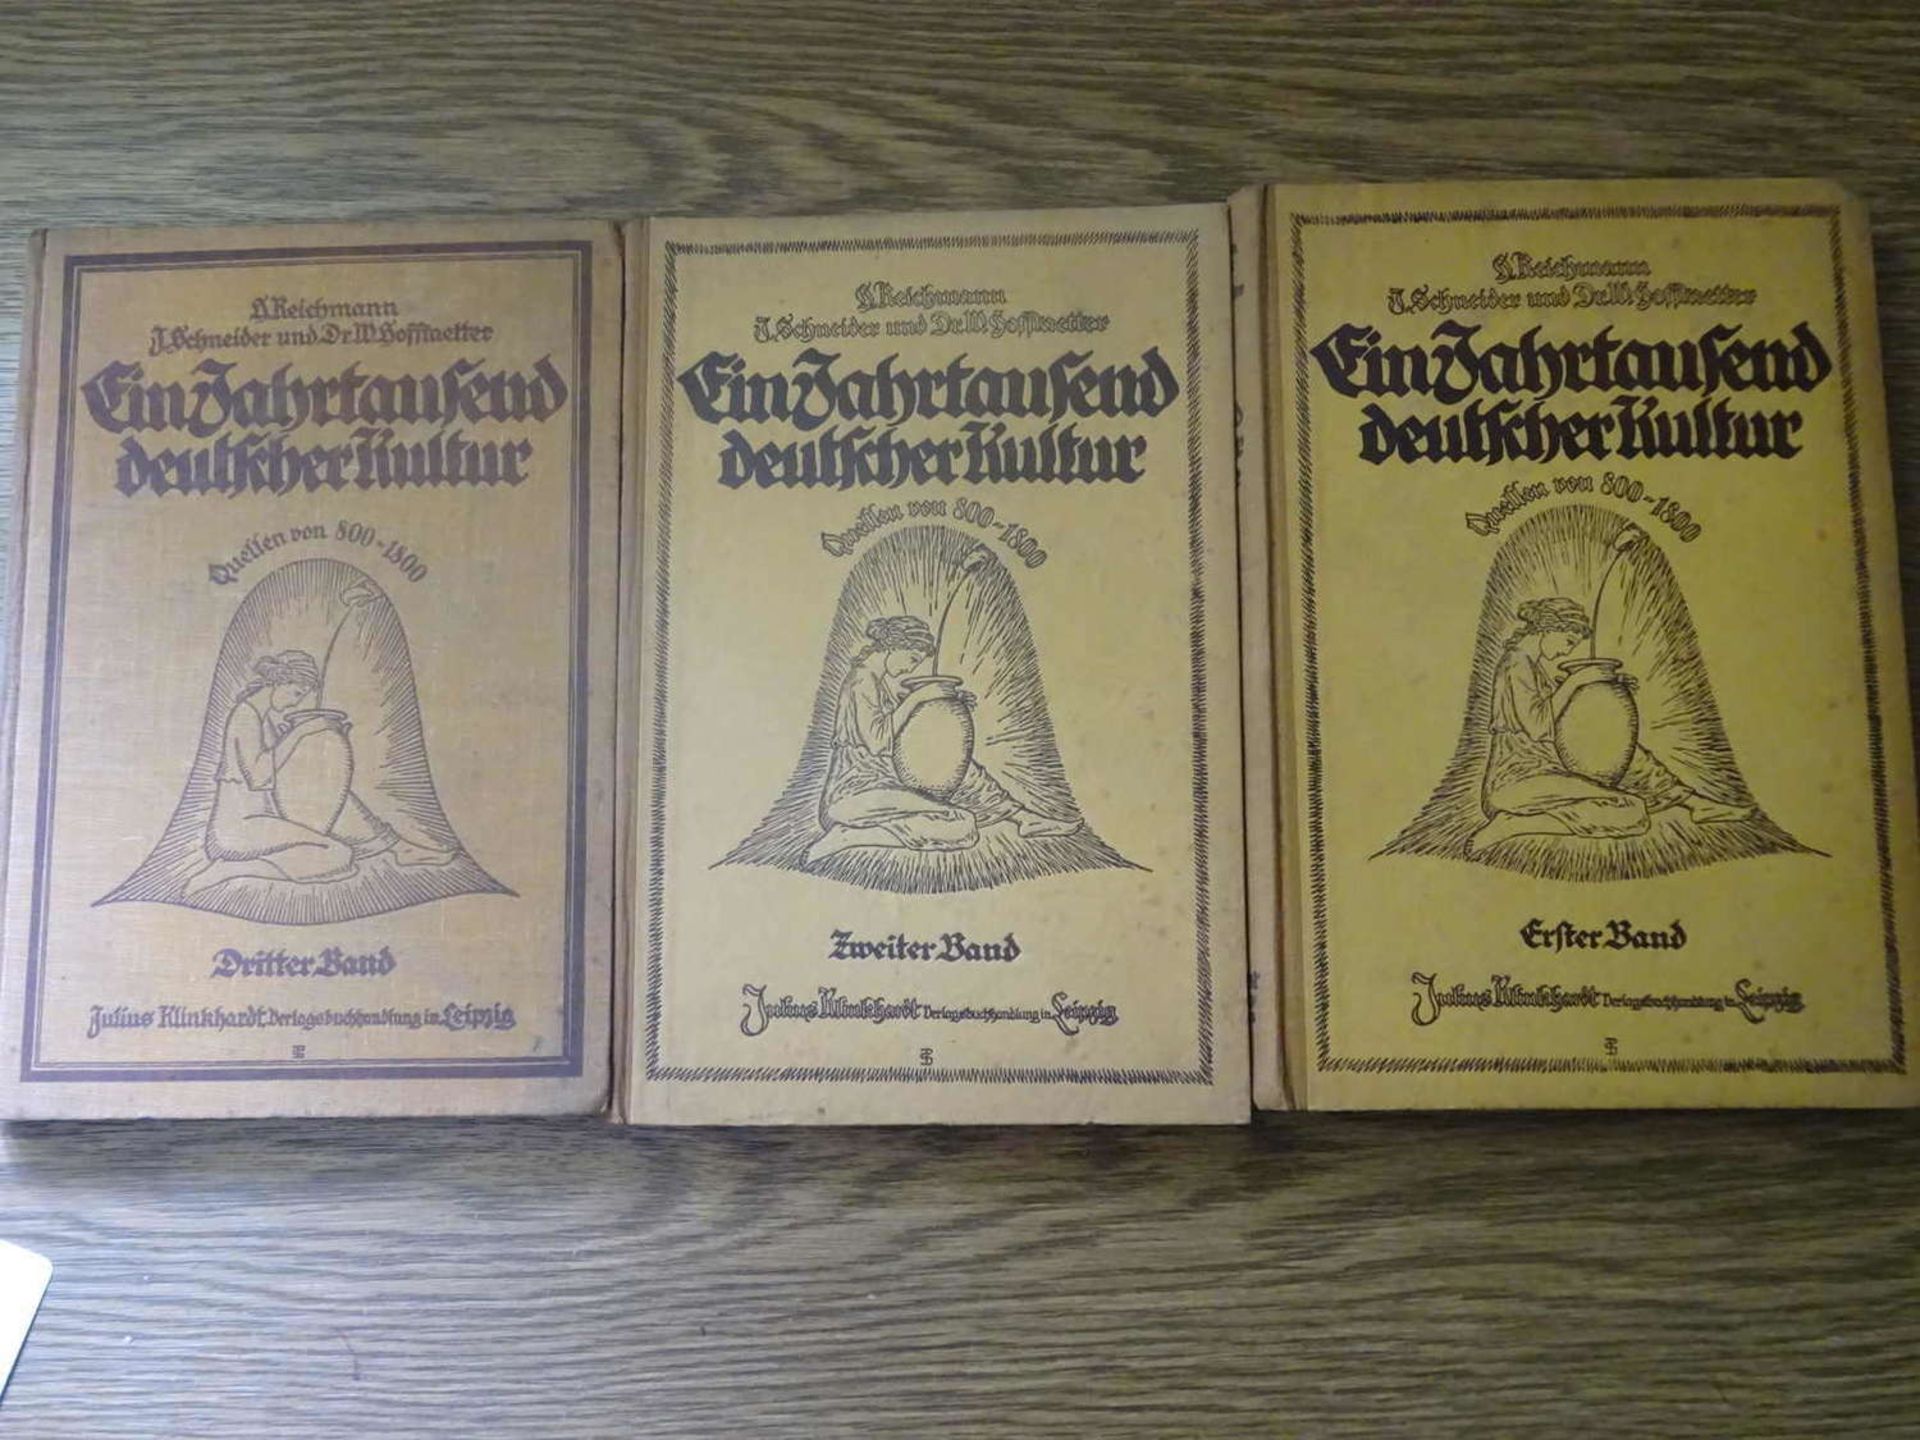 3 Bücher "Ein Jahrtausend deutscher Kultur" Band 1-3. 1922/1924.3 books "A Millennium of German